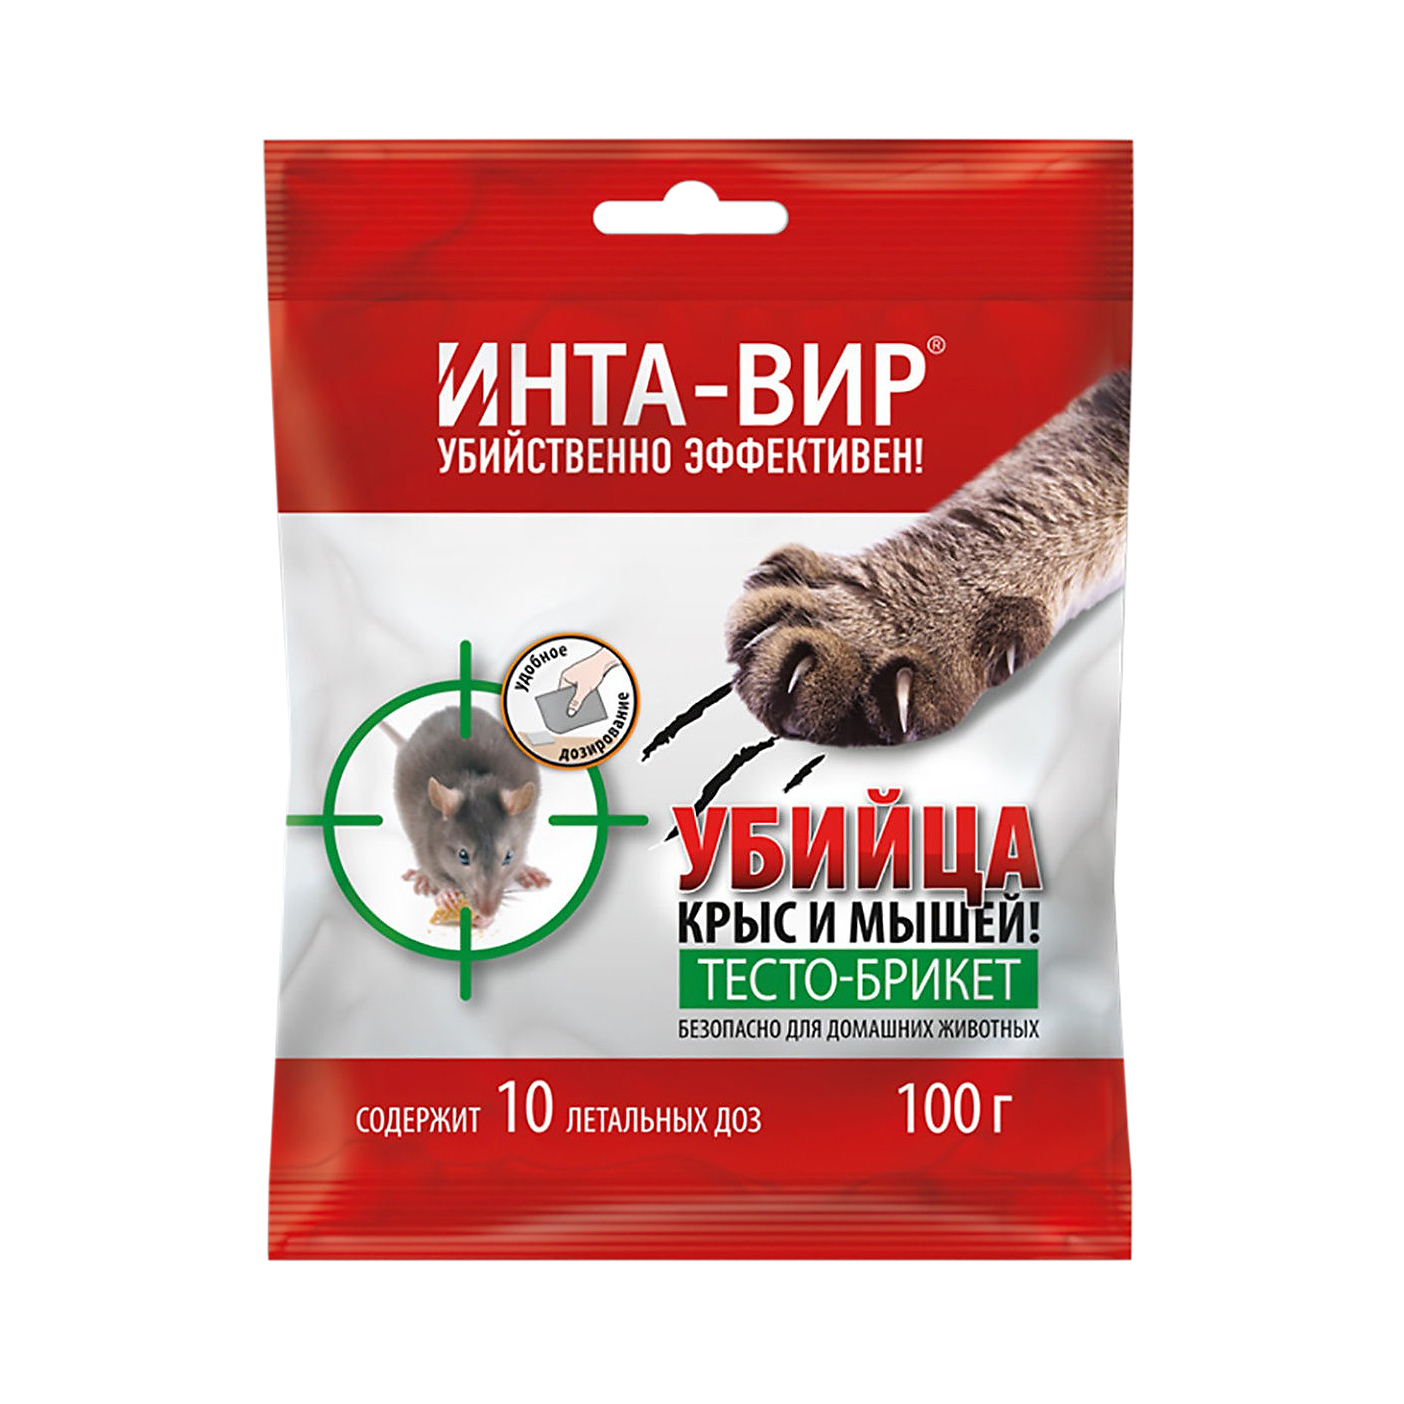 Родентицид Super CАТ Б 100 г зерновая приманка для уничтожения крыс и мышей help